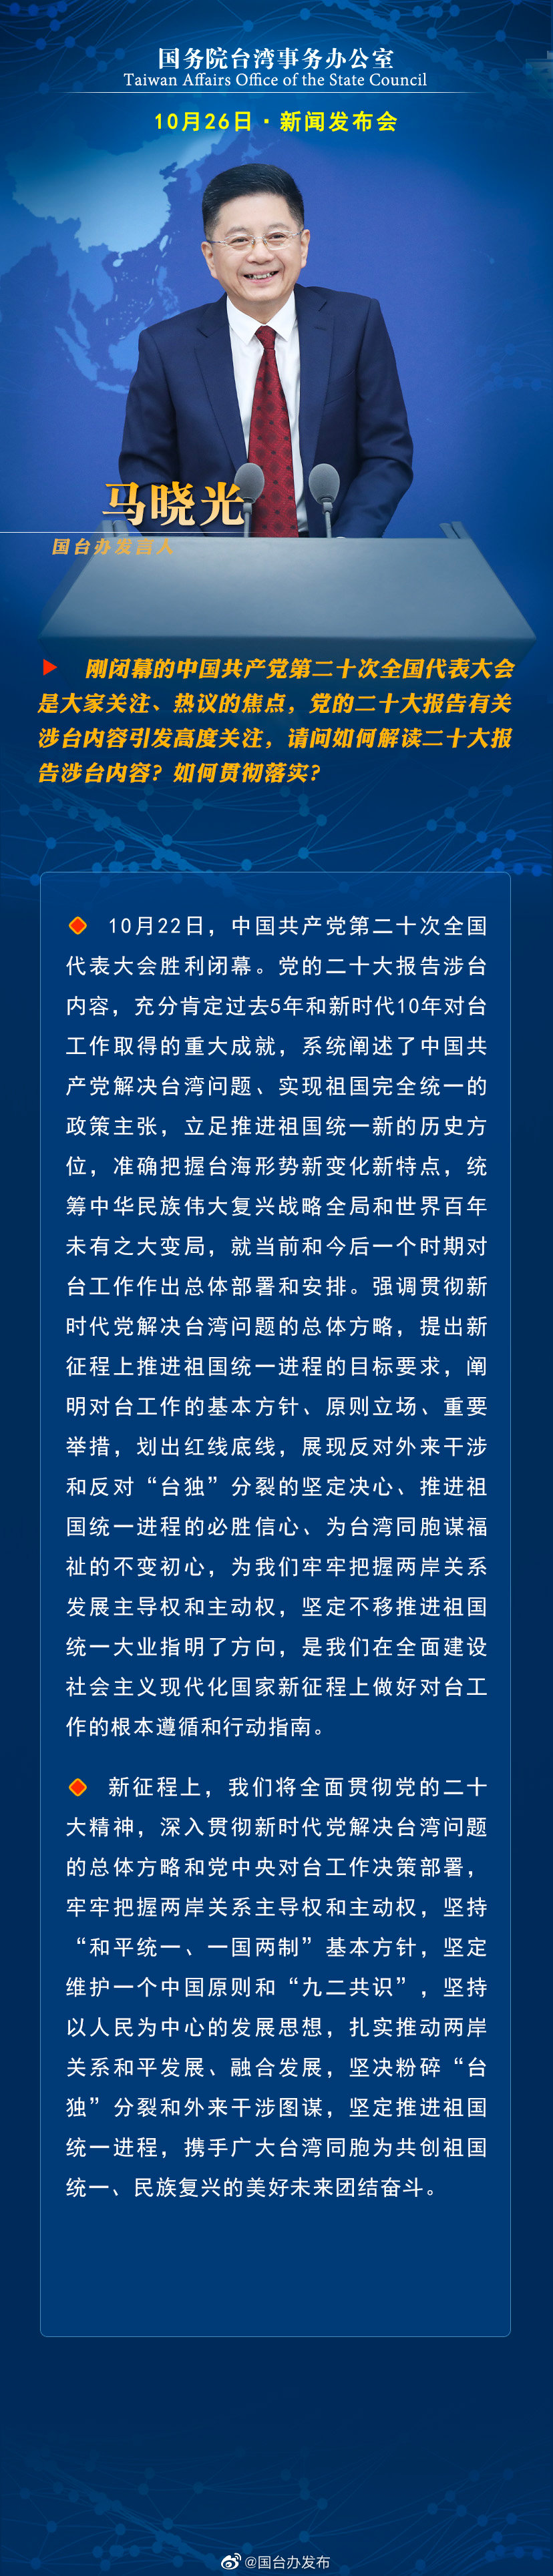 国务院台湾事务办公室10月26日·新闻发布会